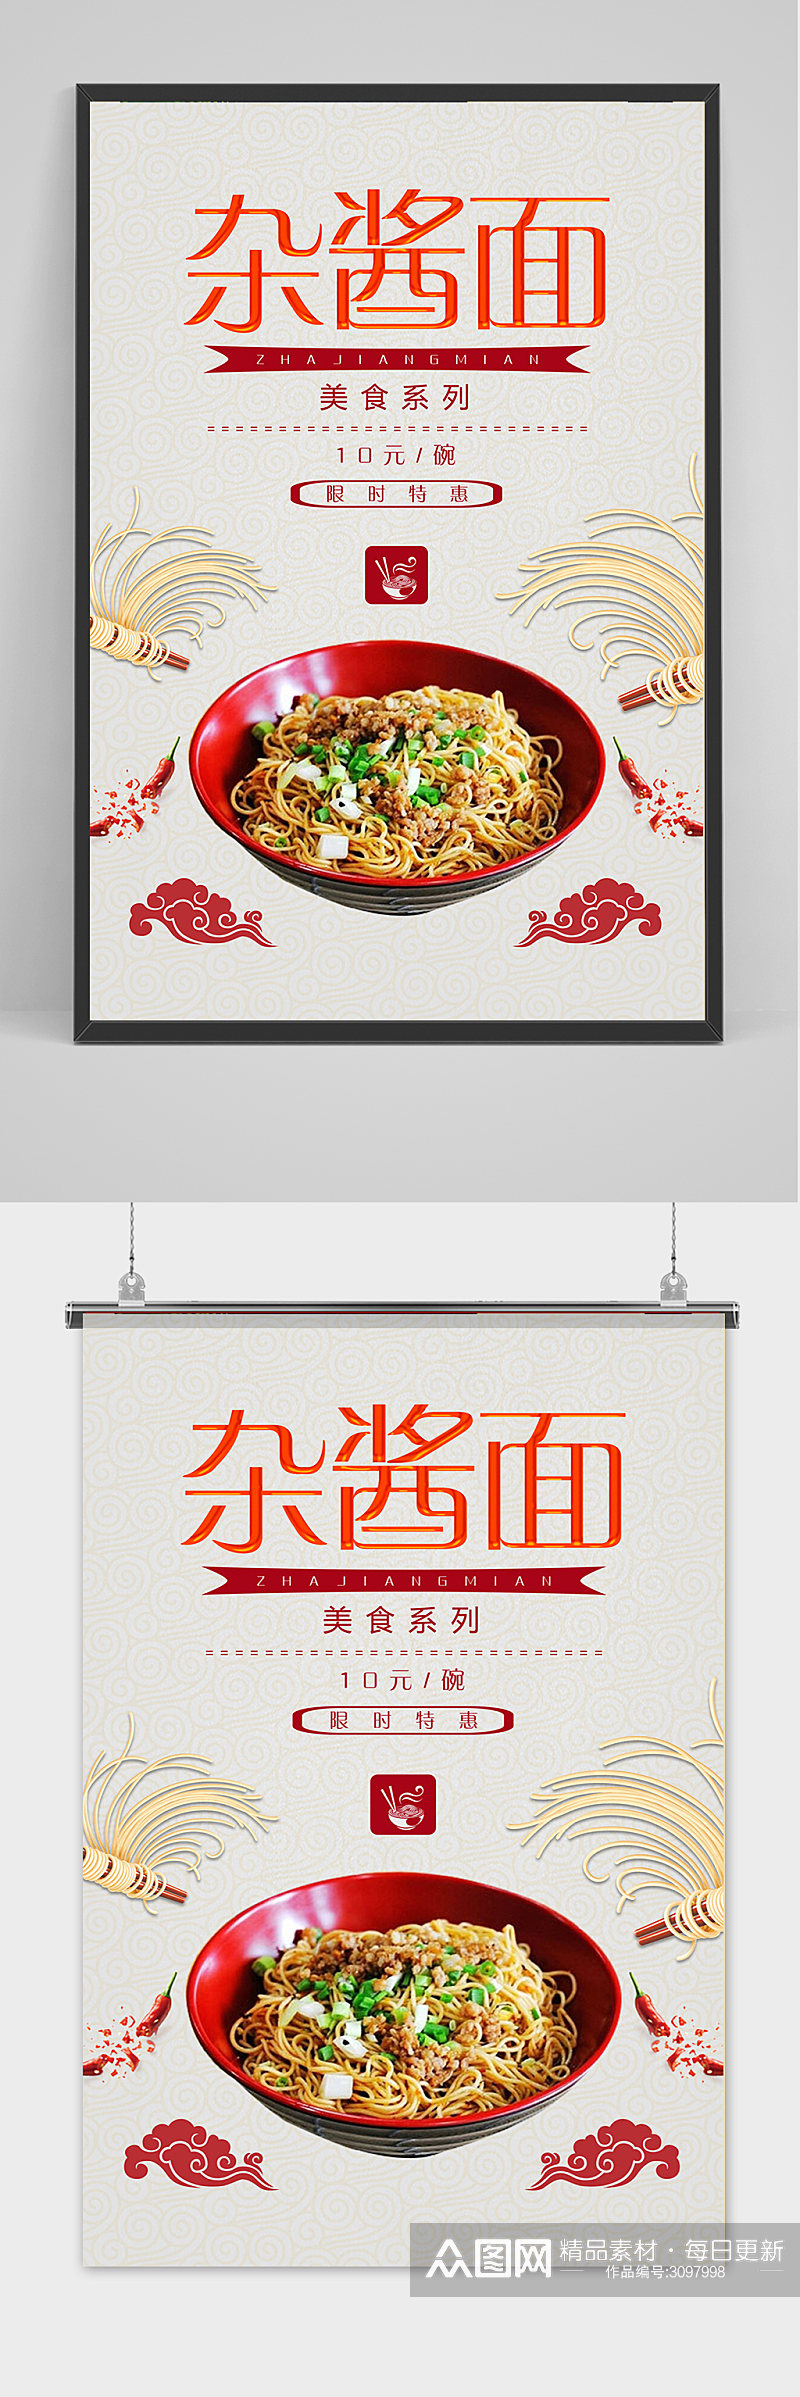 简约杂酱面餐饮美食系列海报素材